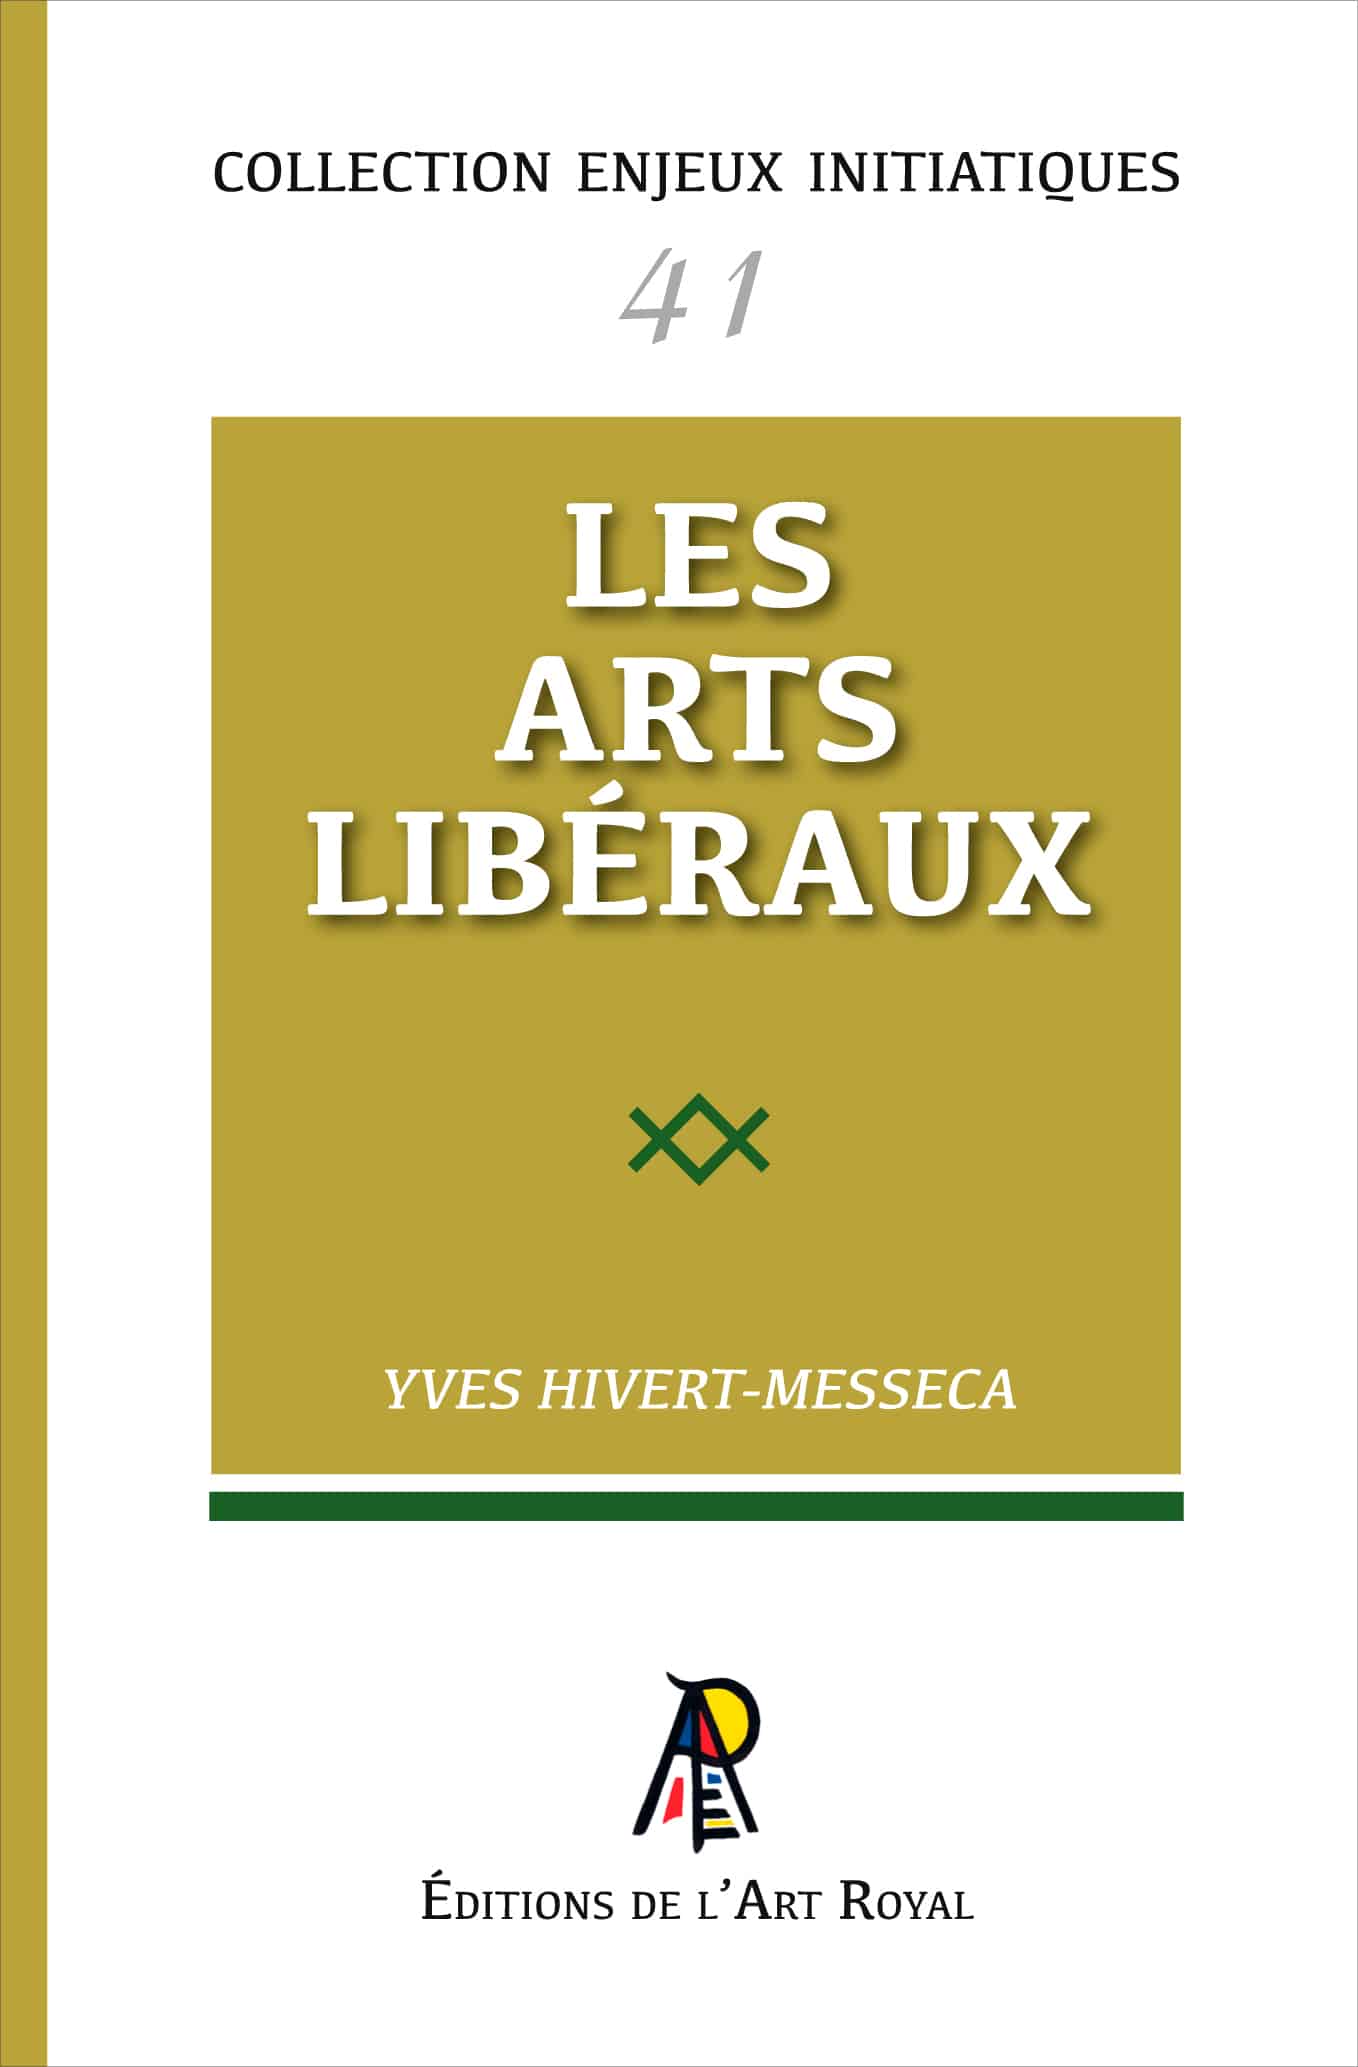 41 - Les arts libéraux, Yves Hivert-Messeca